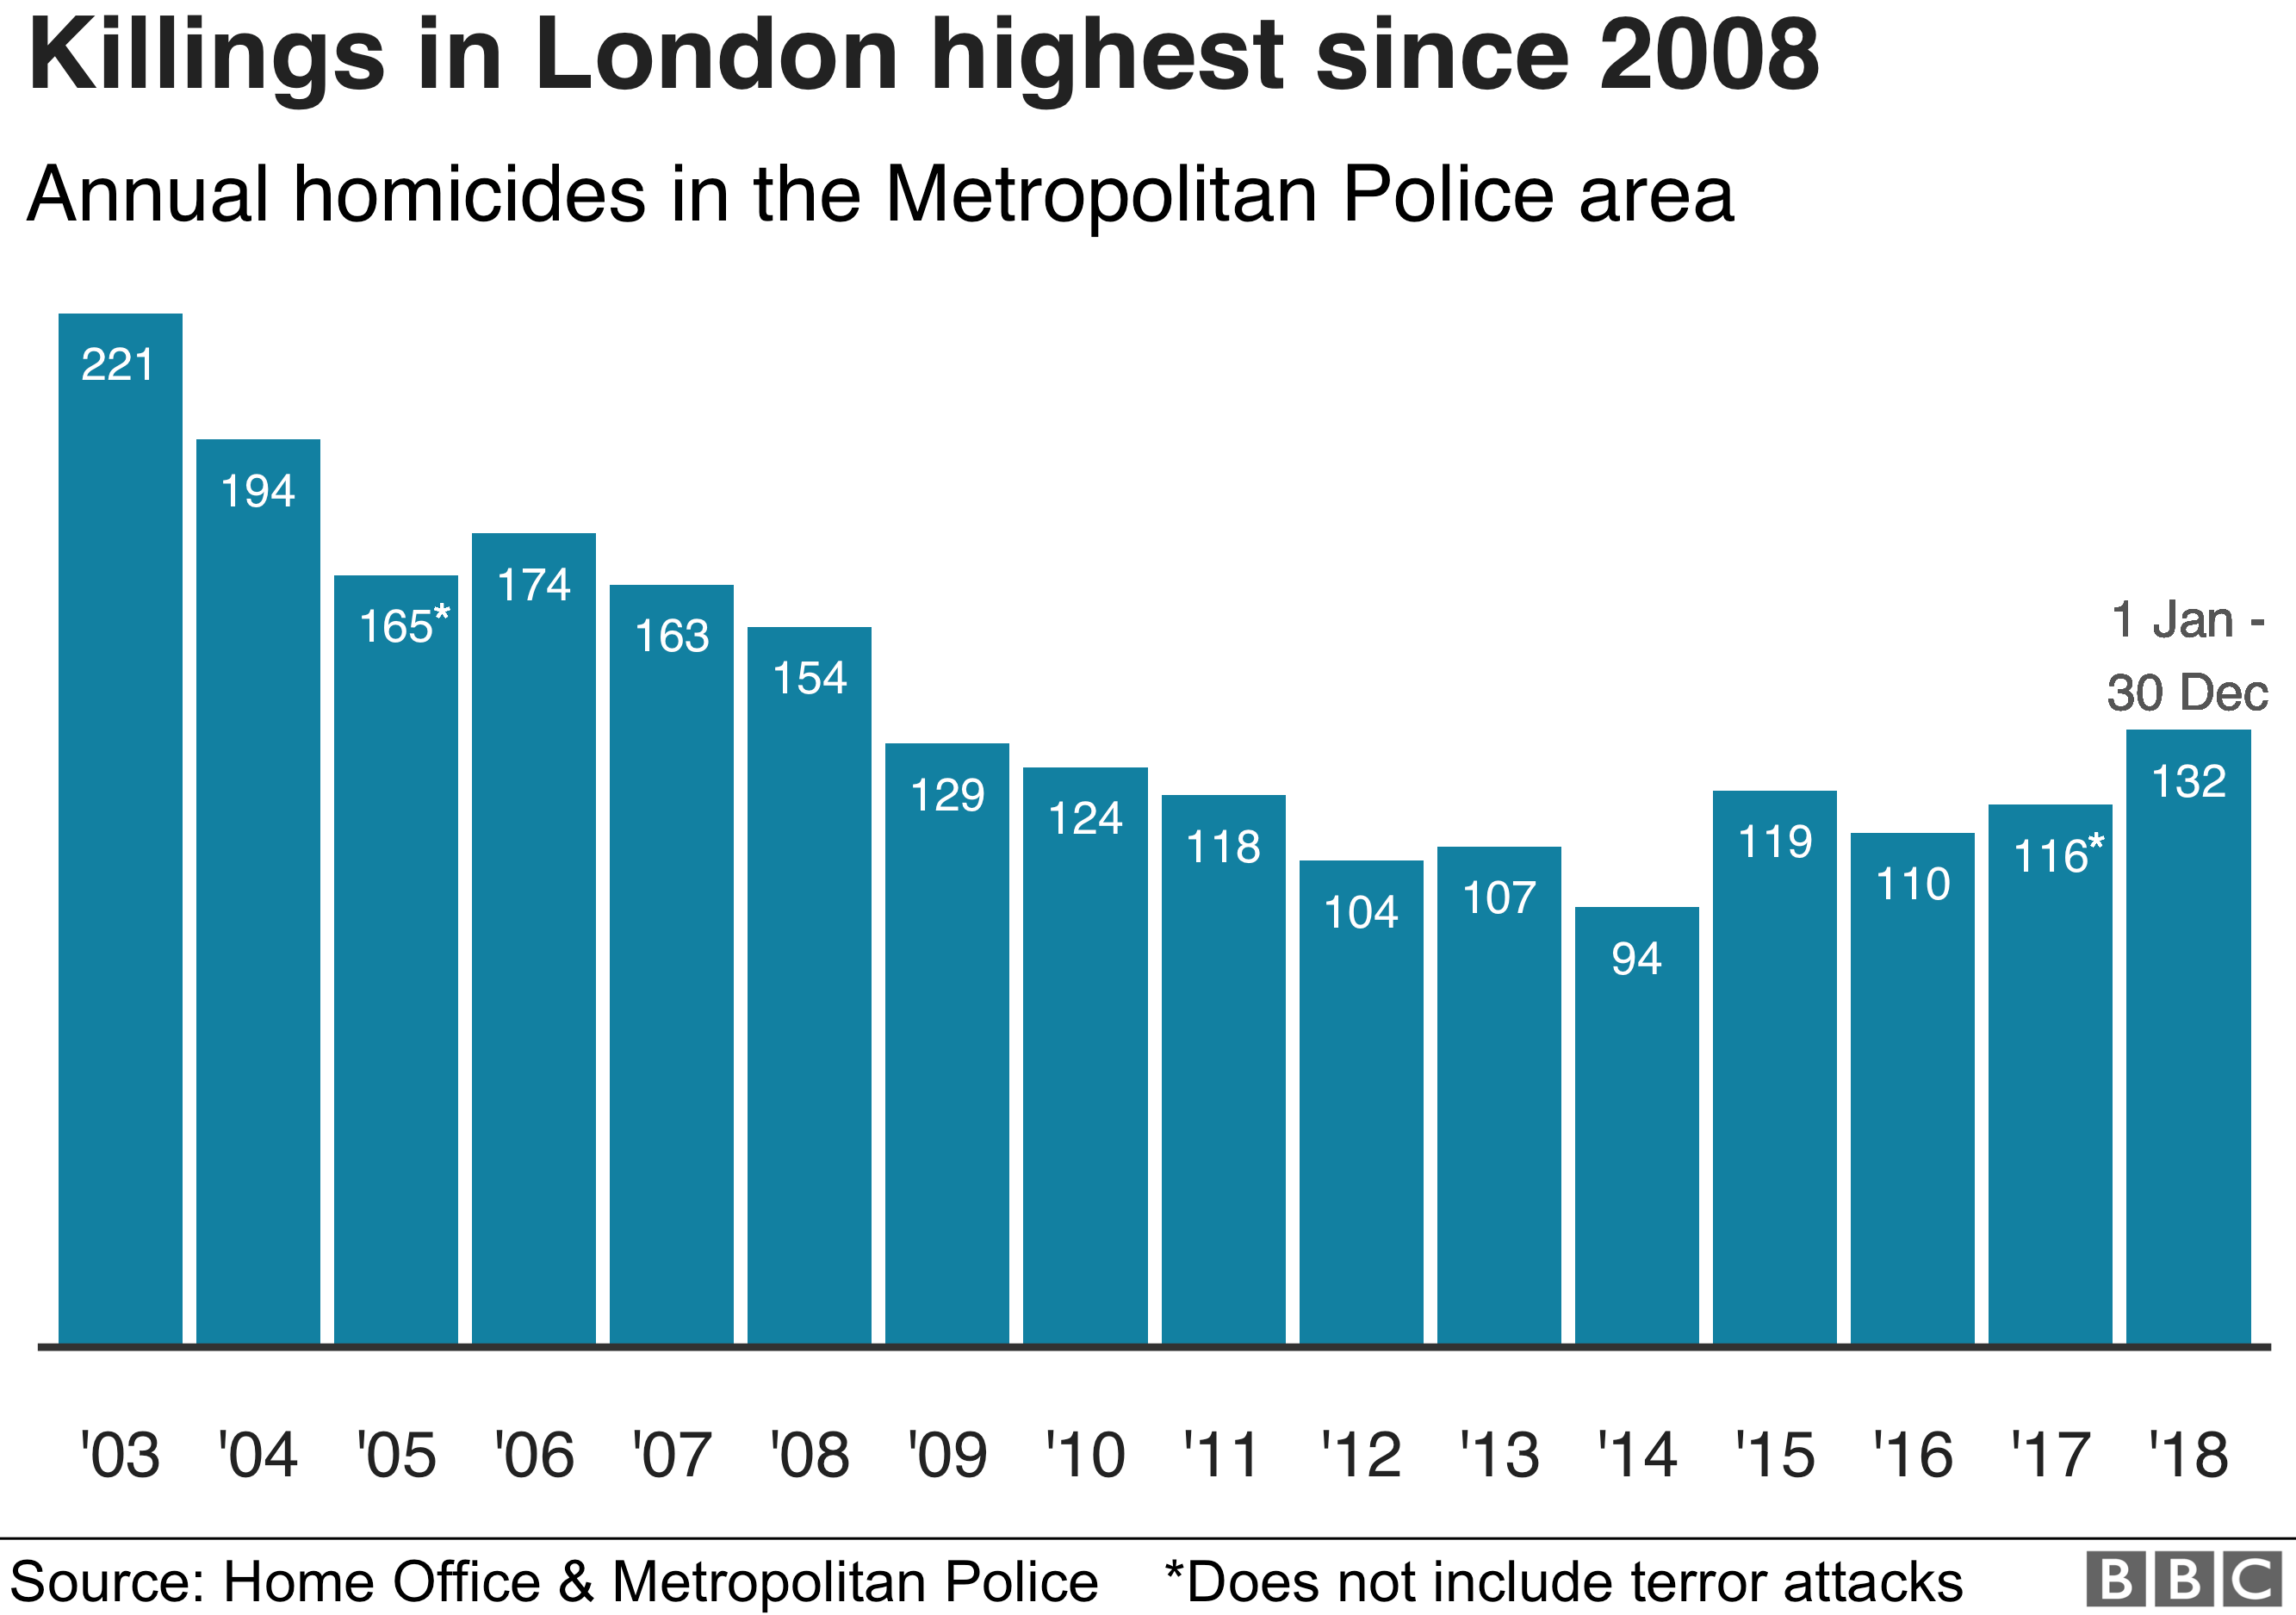 Убийства в Лондоне в период с 2003 по 2008 год